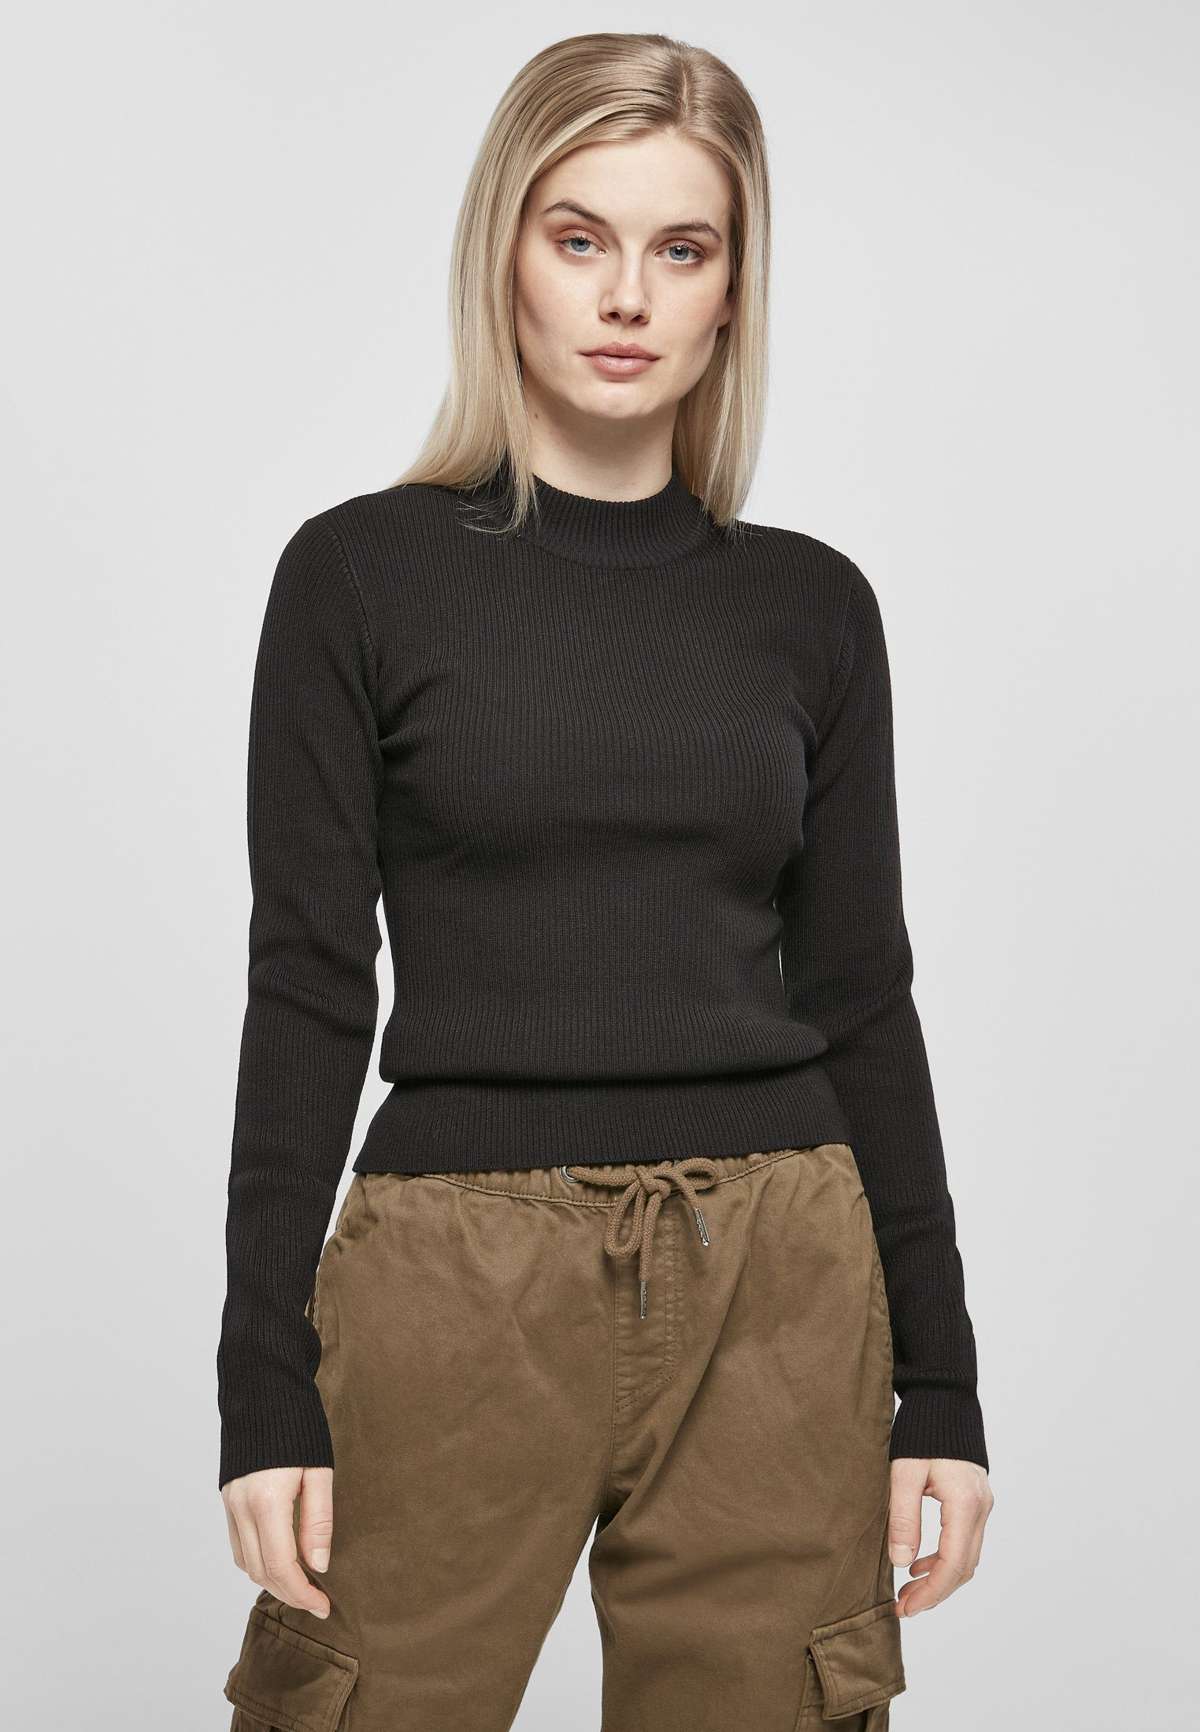 Женская толстовка с капюшоном в рубчик, свитер с высоким воротником (1 шт.)